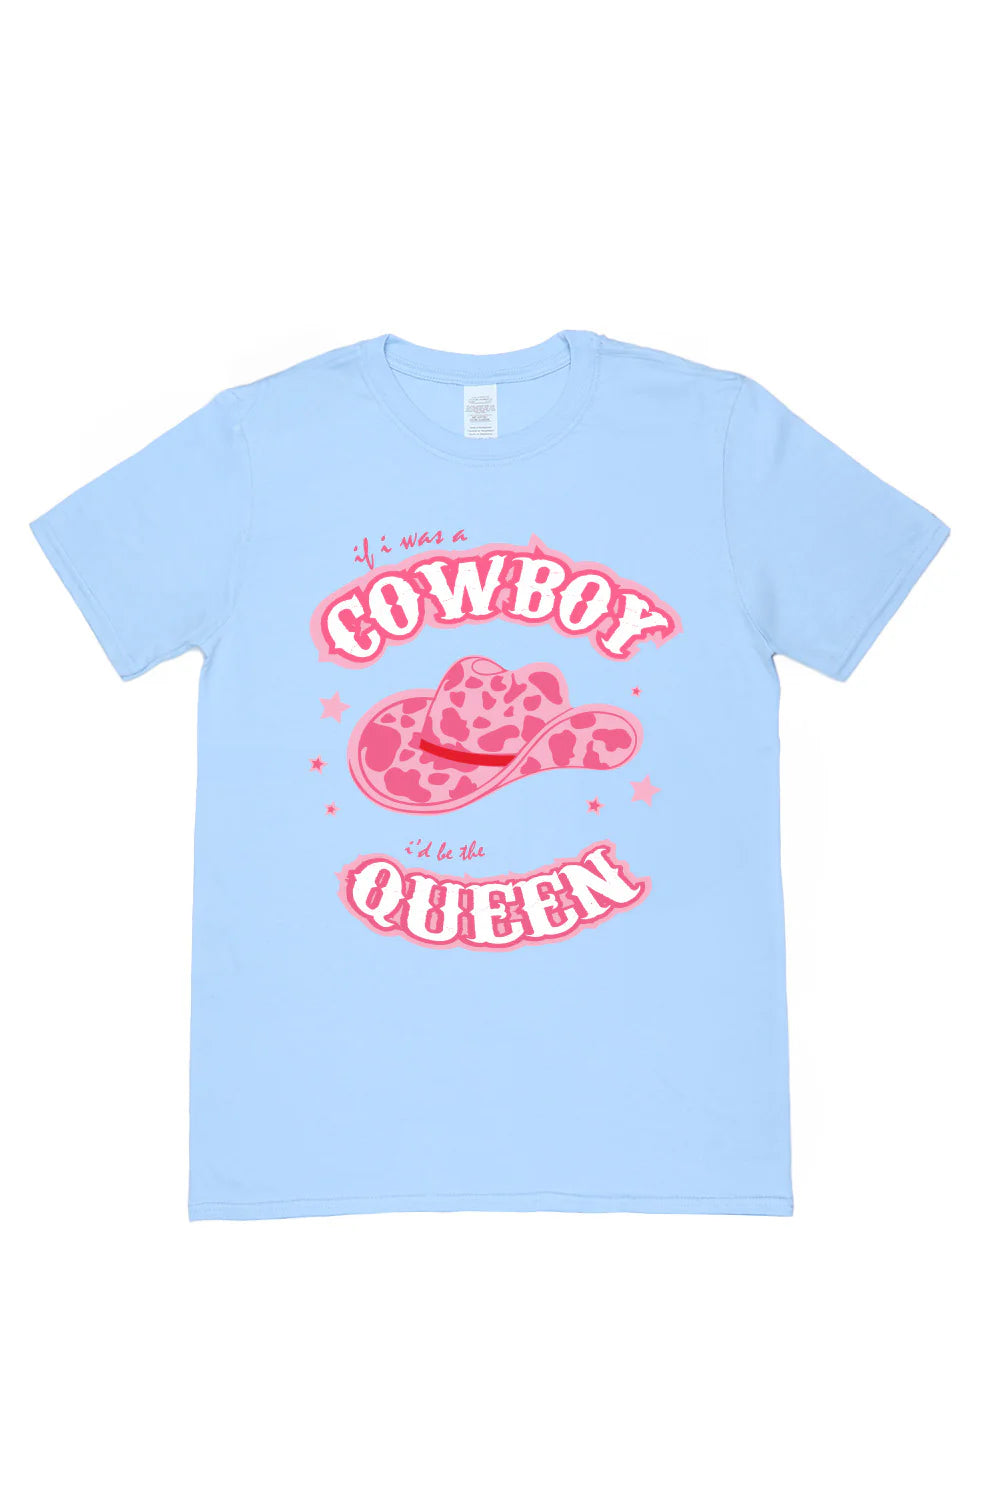 Cowboy Queen T-Shirt